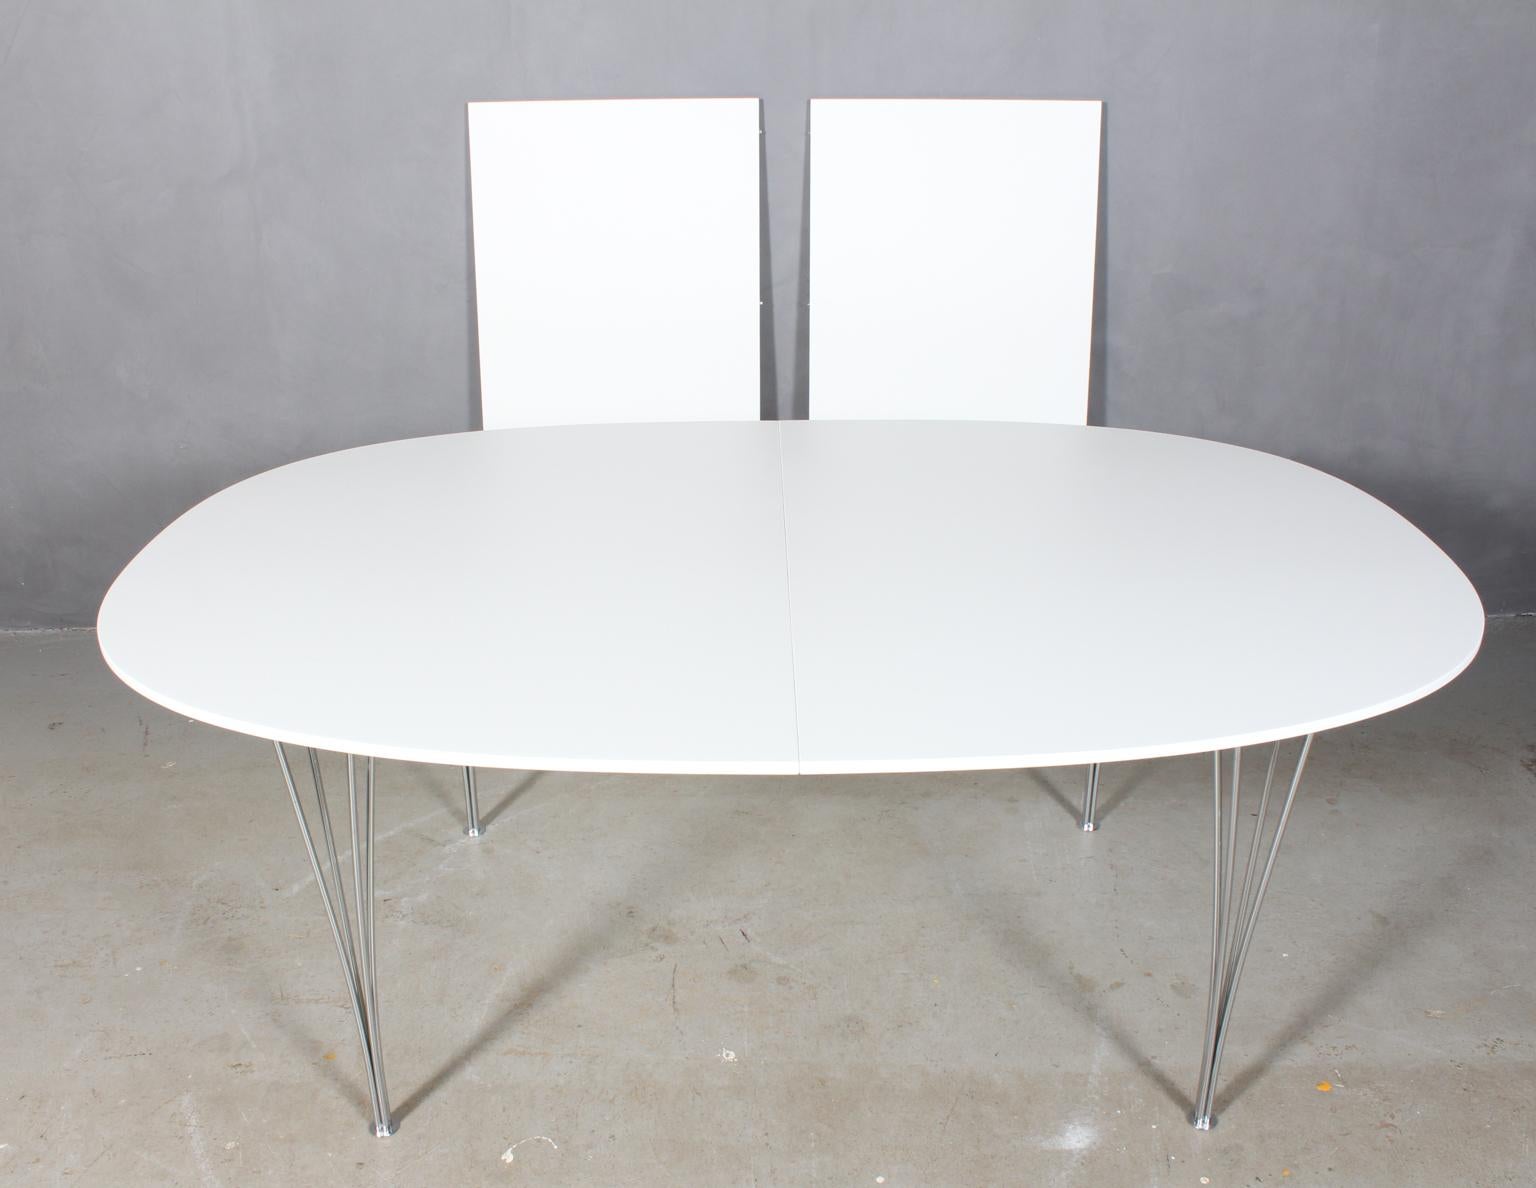 Table de salle à manger Piet Hein & Bruno Mathsson avec nouveau plateau blanc laqué professionnel. 

Deux feuilles d'extension de 60 cms.

Pieds en métal chromé.

Modèle Super Elipse, fabriqué par Fritz Hansen.

C'est l'une des tables les